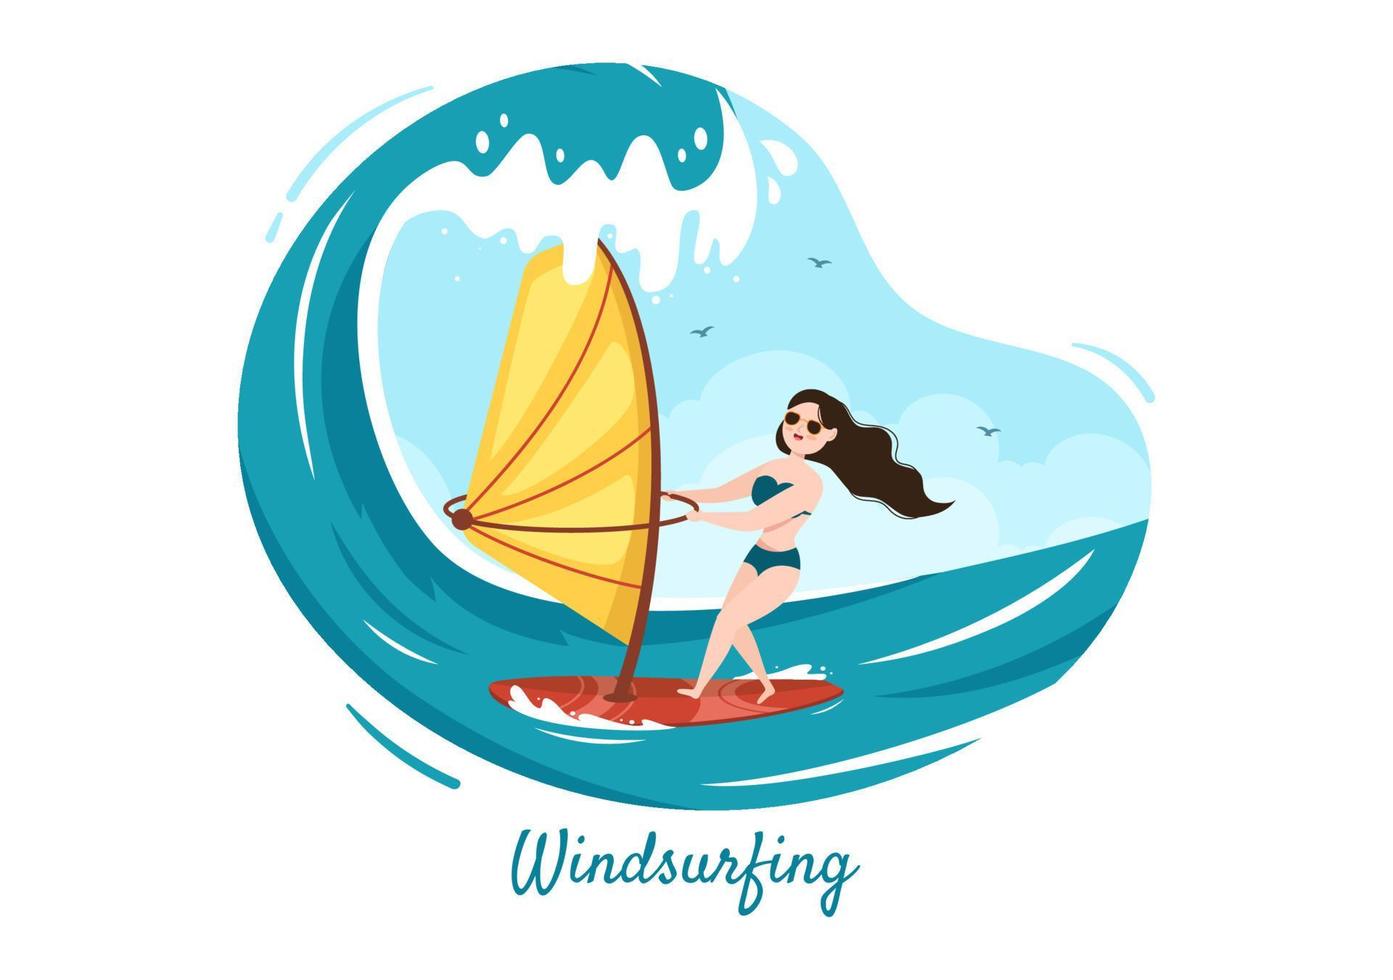 sommar vindsurfing av vattensportaktiviteter tecknad illustration med turer på de tunnformade forsande vågorna eller flytande på paddelbräda i platt stil vektor